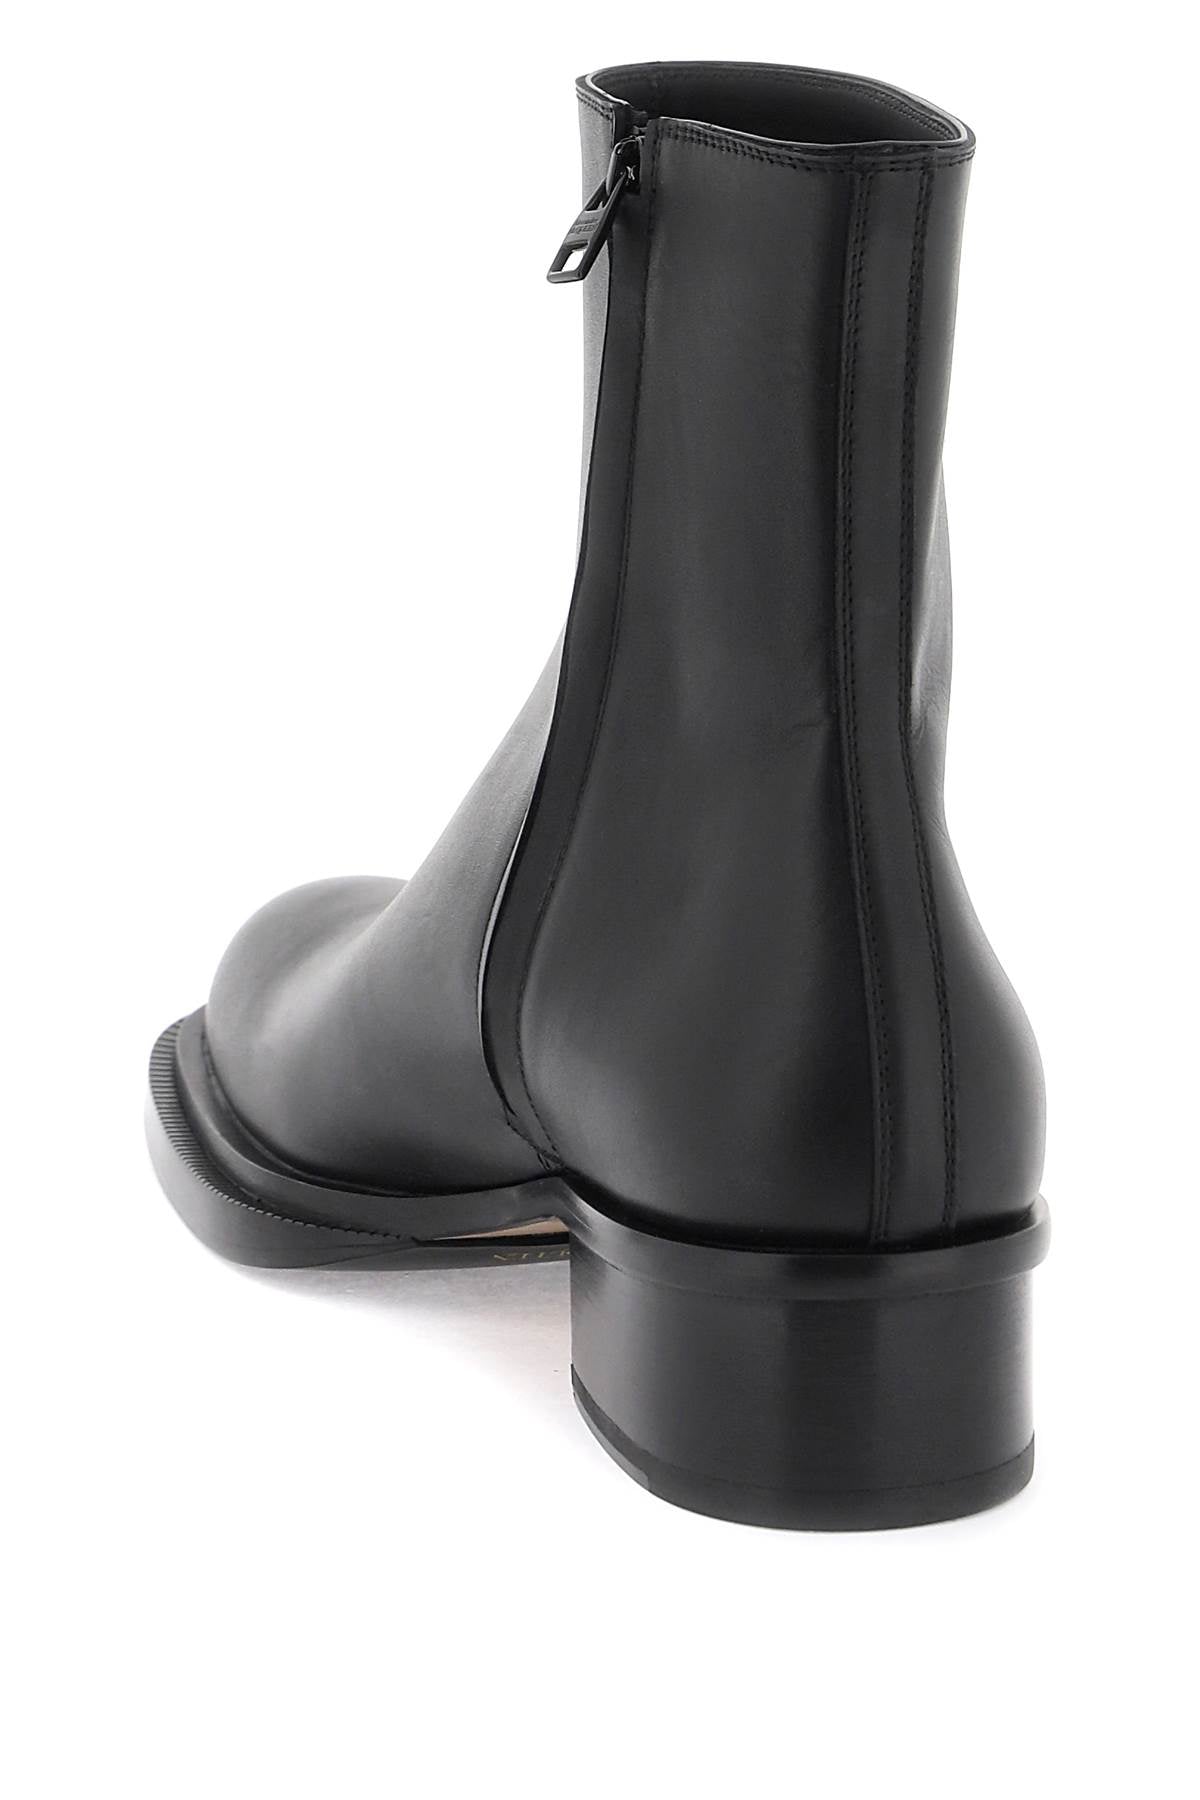 حذاء كوباني أنكل للرجال - جلد أسود مزدوج الطبقة